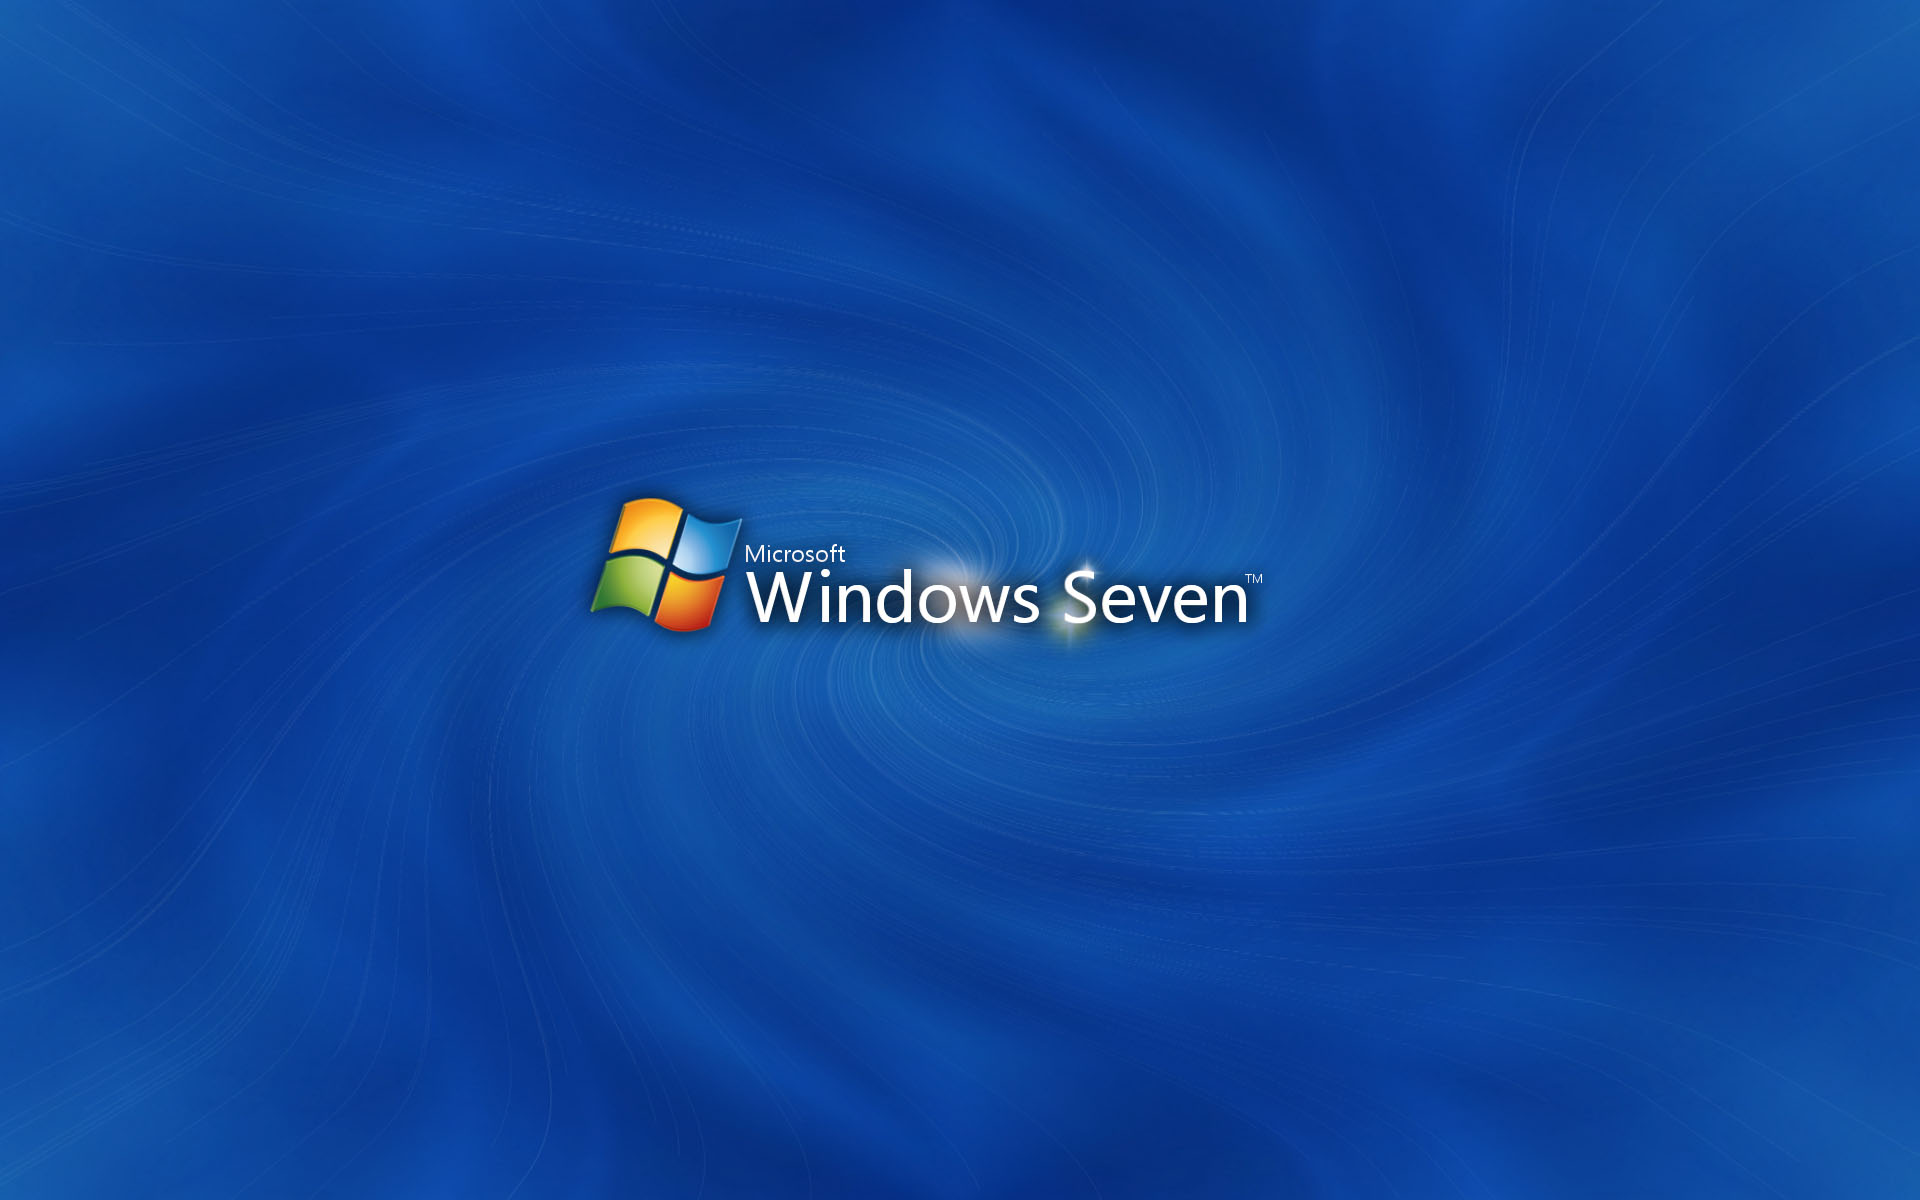 壁纸1920x1200Windows7 3 8壁纸 Windows7壁纸 Windows7图片 Windows7素材 系统壁纸 系统图库 系统图片素材桌面壁纸